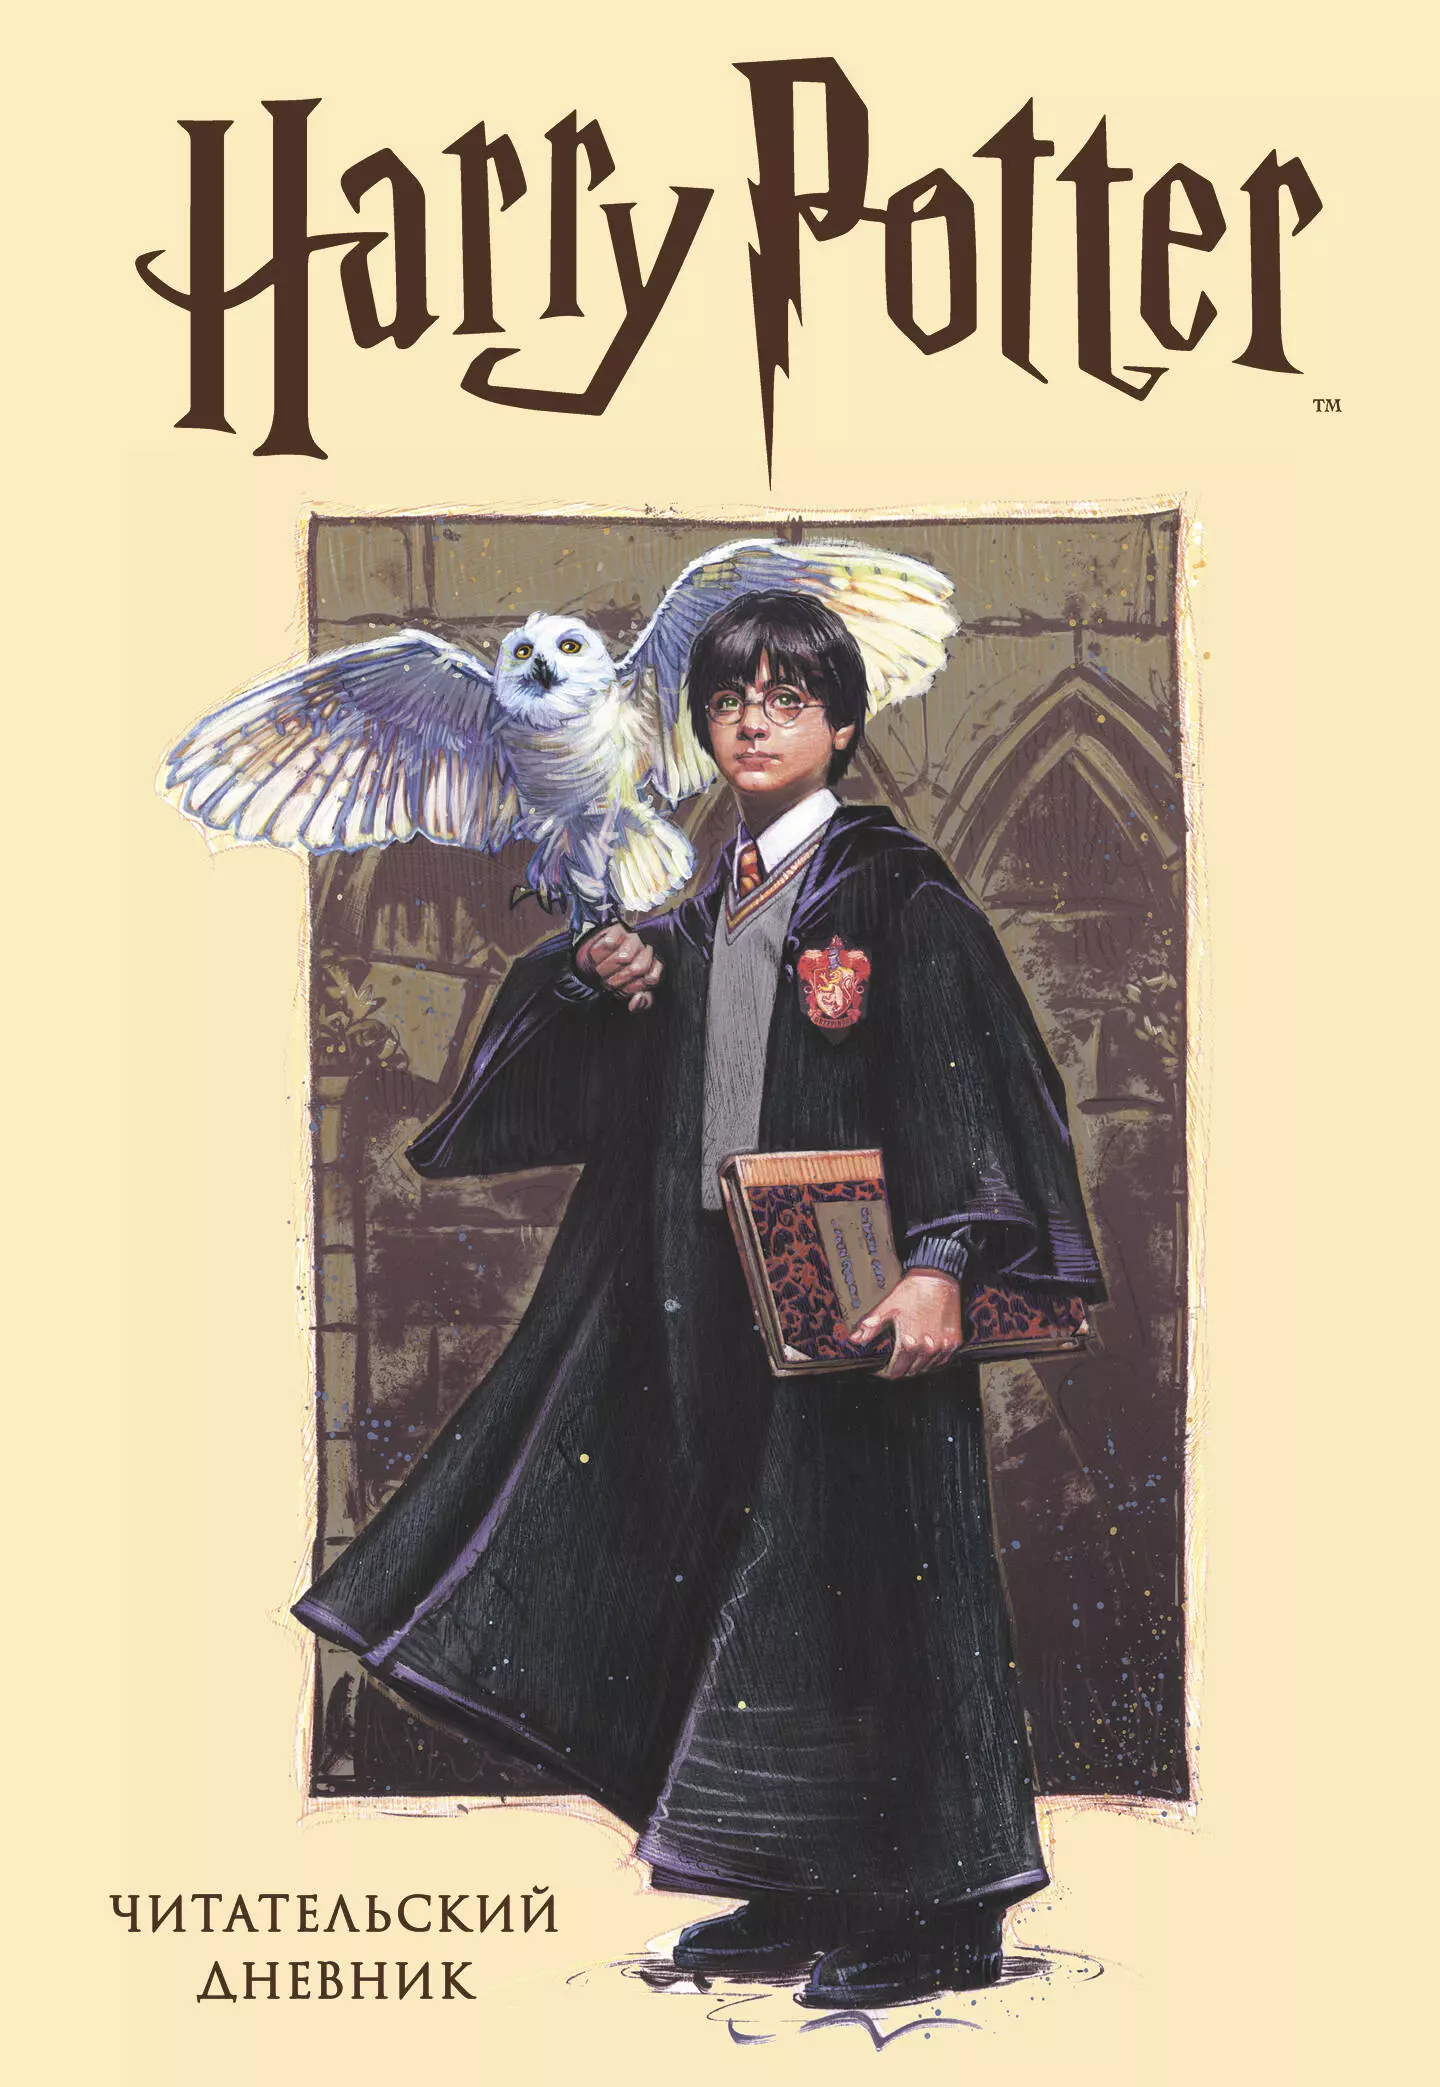 Читательский дневник. Гарри Поттер (32 л., твердый переплет, с наклейками) читательский дневник гарри поттер 32 листа